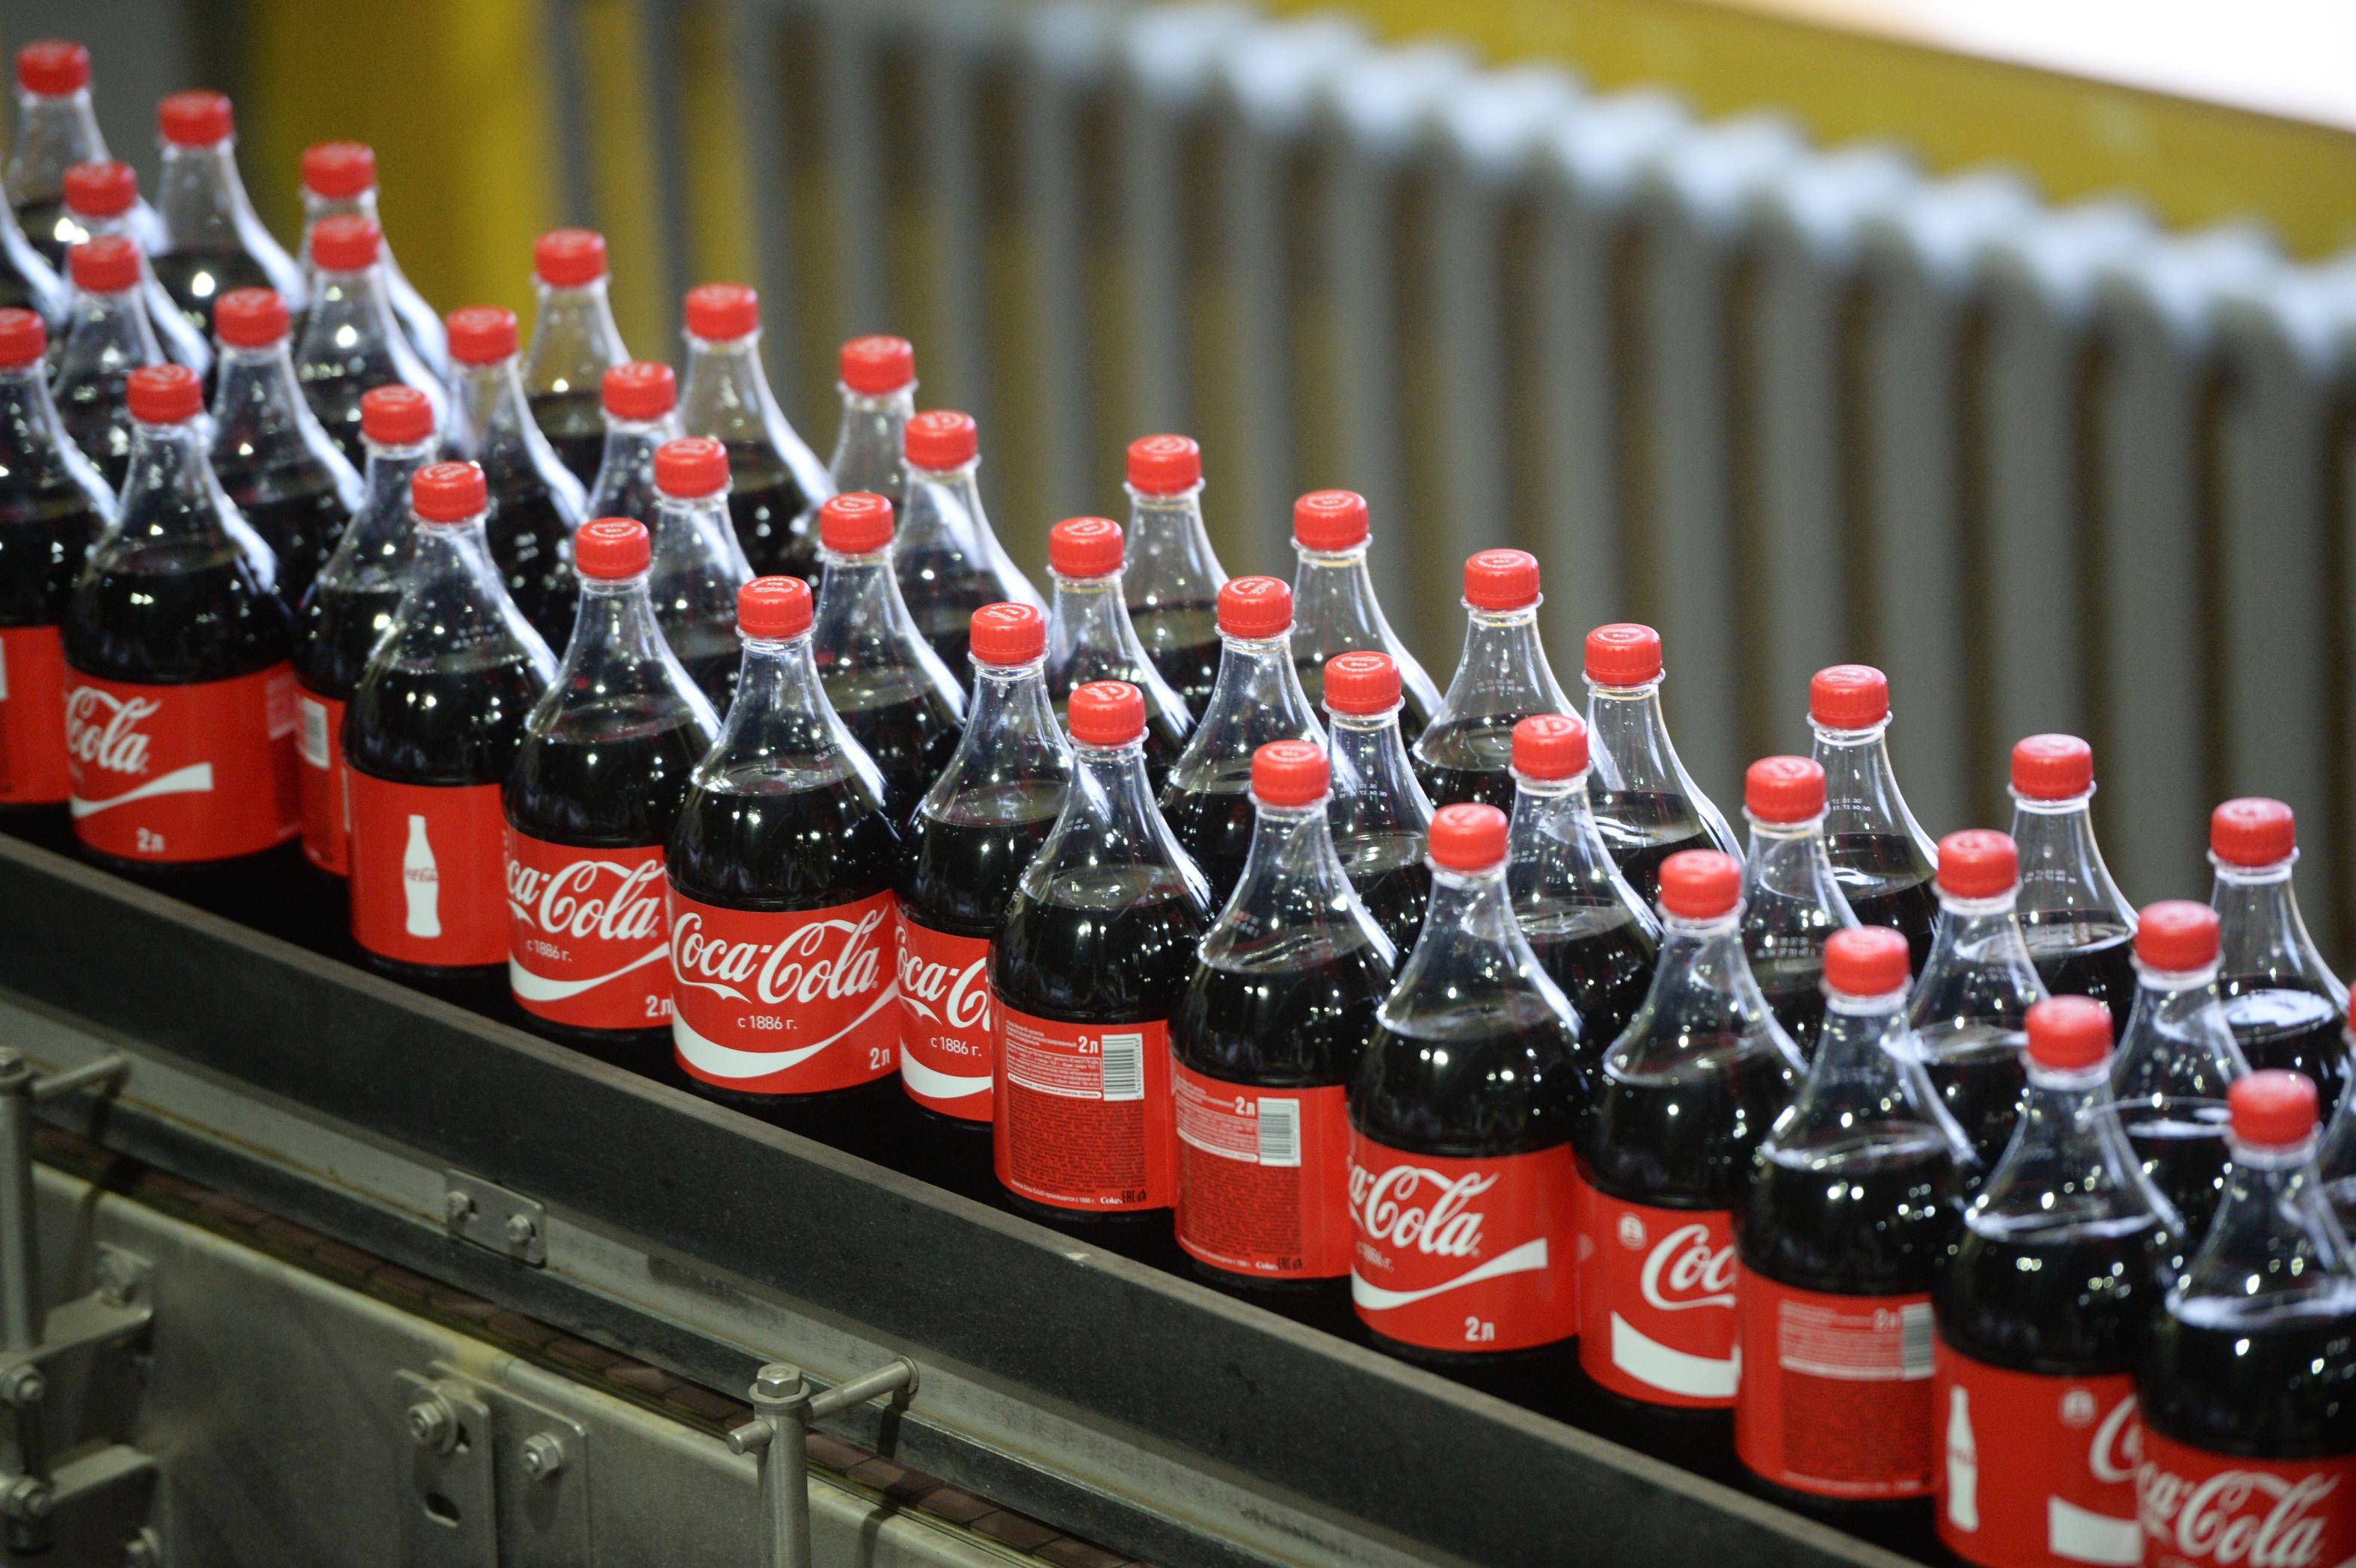 Gustul românilor pentru Coca-Cola nu dispare: îmbuteliatorul Coca-Cola în România a avut afaceri de 2,7 mld. lei în 2019, plus 9%